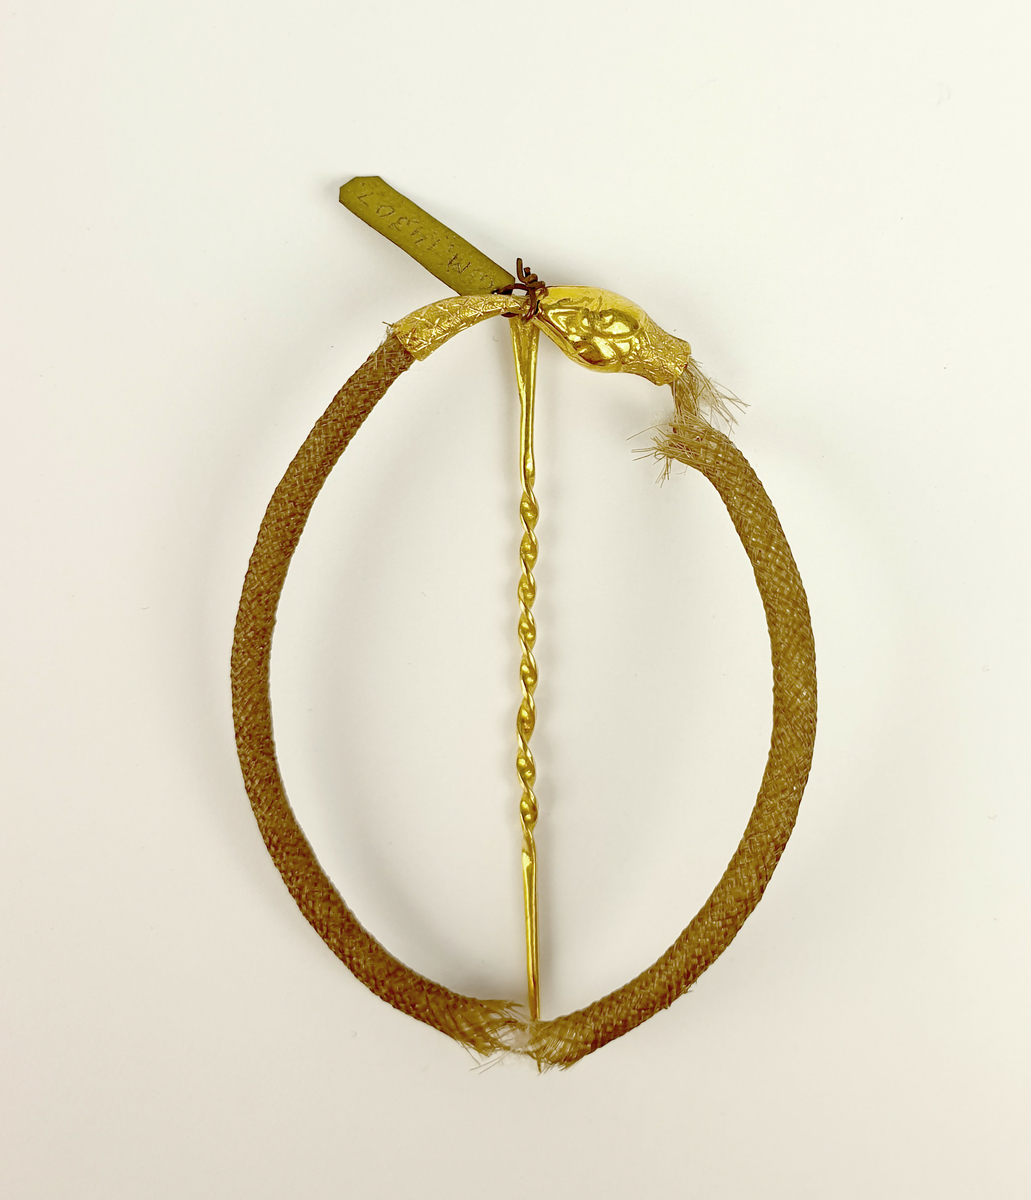 Prydnadsnål, nål av guld. Tillverkad av Arvid Öhrn, Gävle.
Hårarbete: form av en orm. Huvud och stjärt av guld, likaså nålen. Stämplad G 18K m.m.